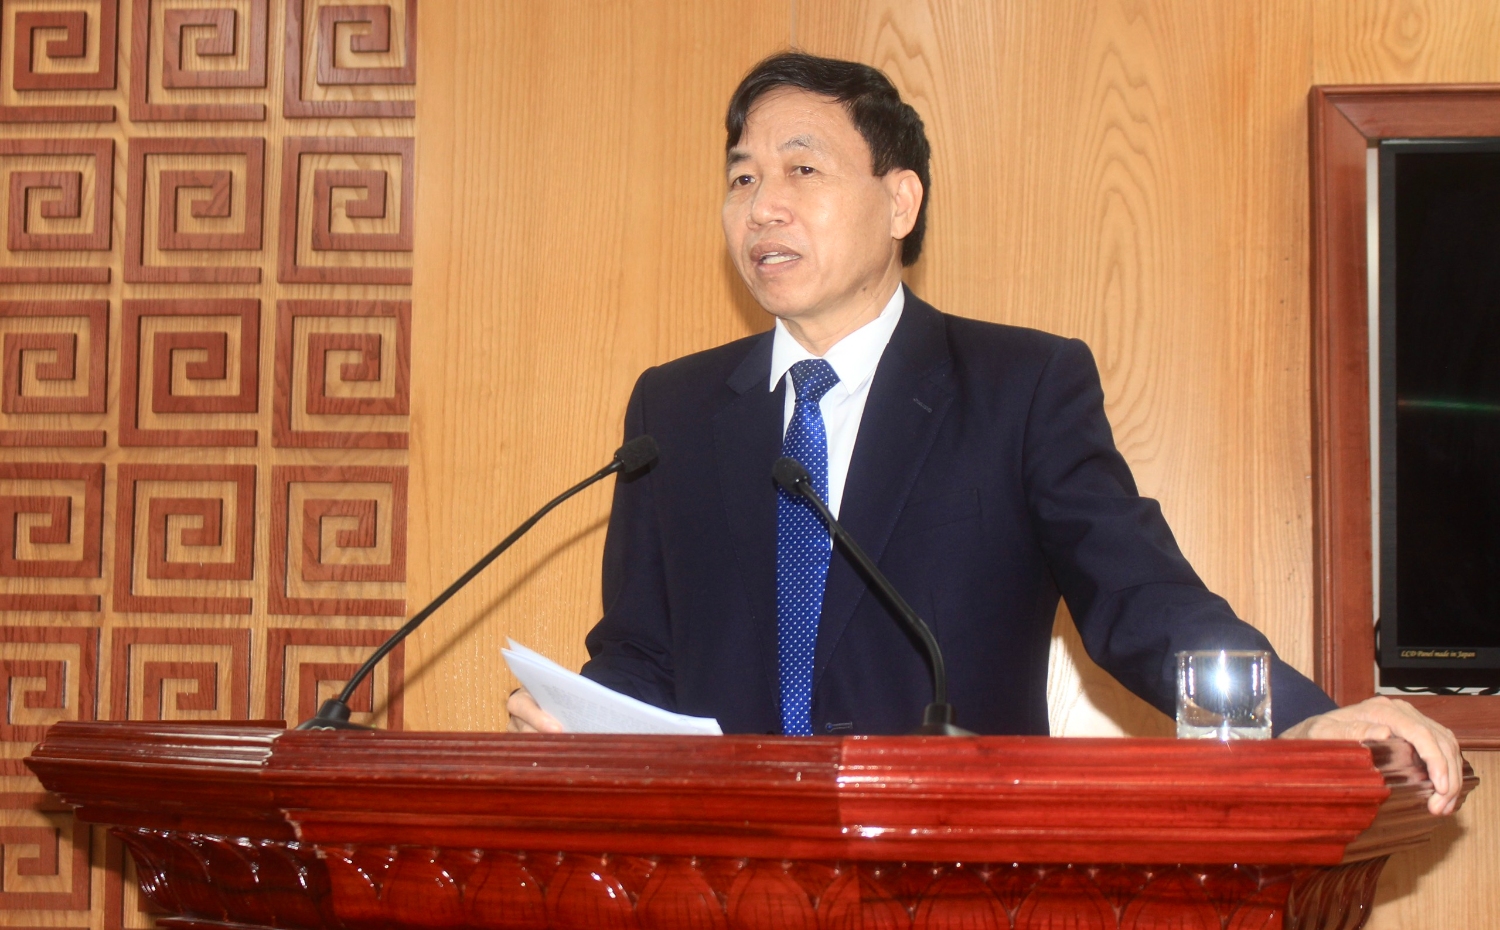 Đồng chí Lê Văn Lương - Phó Bí thư Thường trực Tỉnh ủy phát biểu chỉ đạo tại Hội nghị